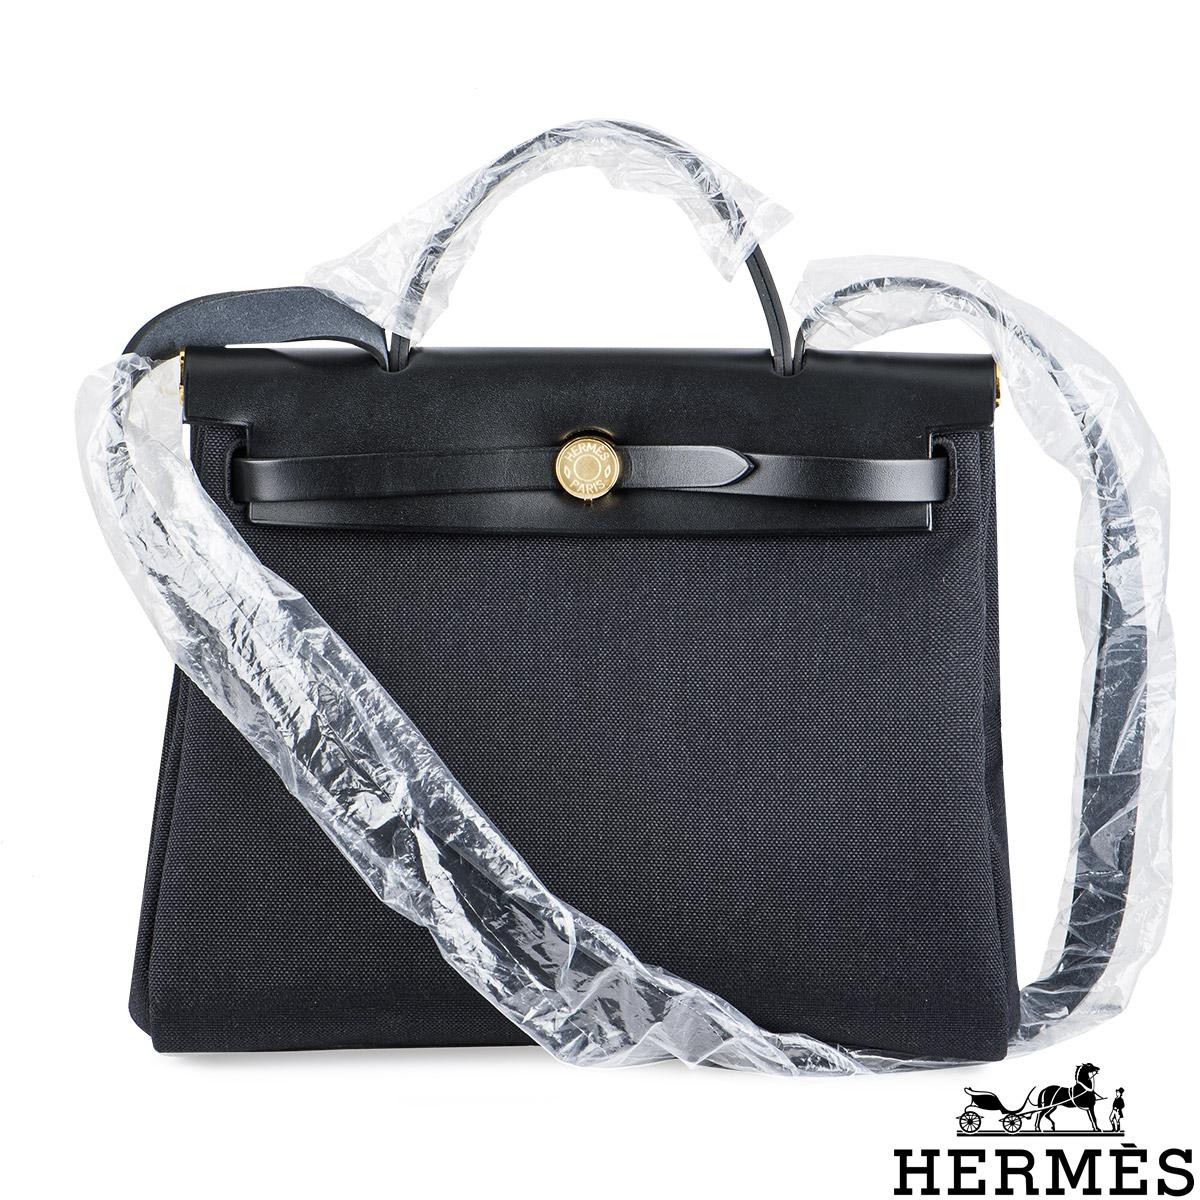 Eine schicke Hermes Herbag Zip 31 Handtasche. Das Äußere dieser Herbag ist mit einem Henkel und einem Riemen aus Noir Vache Hunter-Leder ausgestattet, während der Körper der Tasche aus Noir Toile Militaire-Canvas besteht, einen Clou de